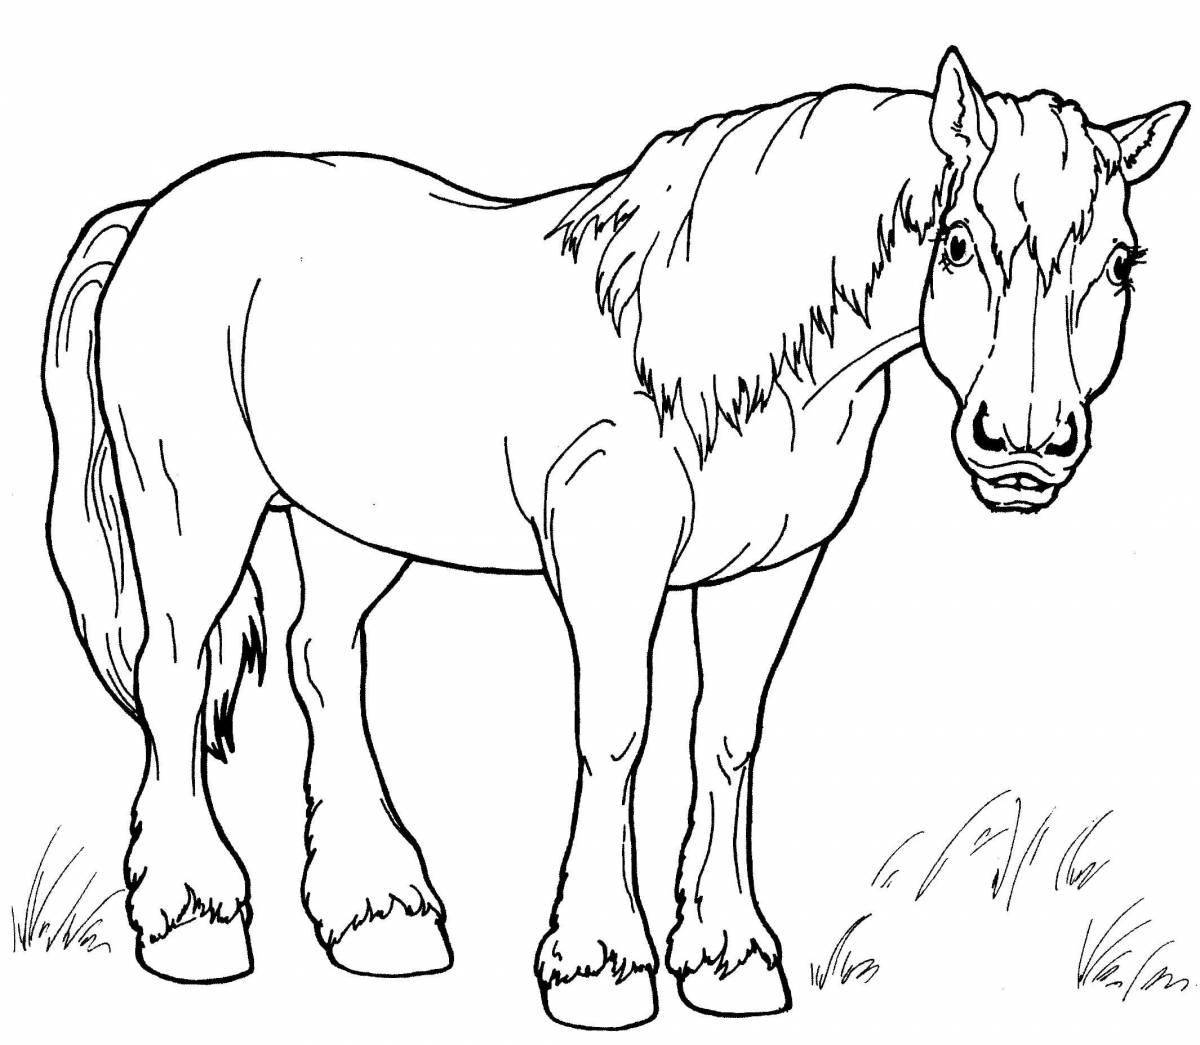 Лошадь-раскраска морган скачущий галопом для детей